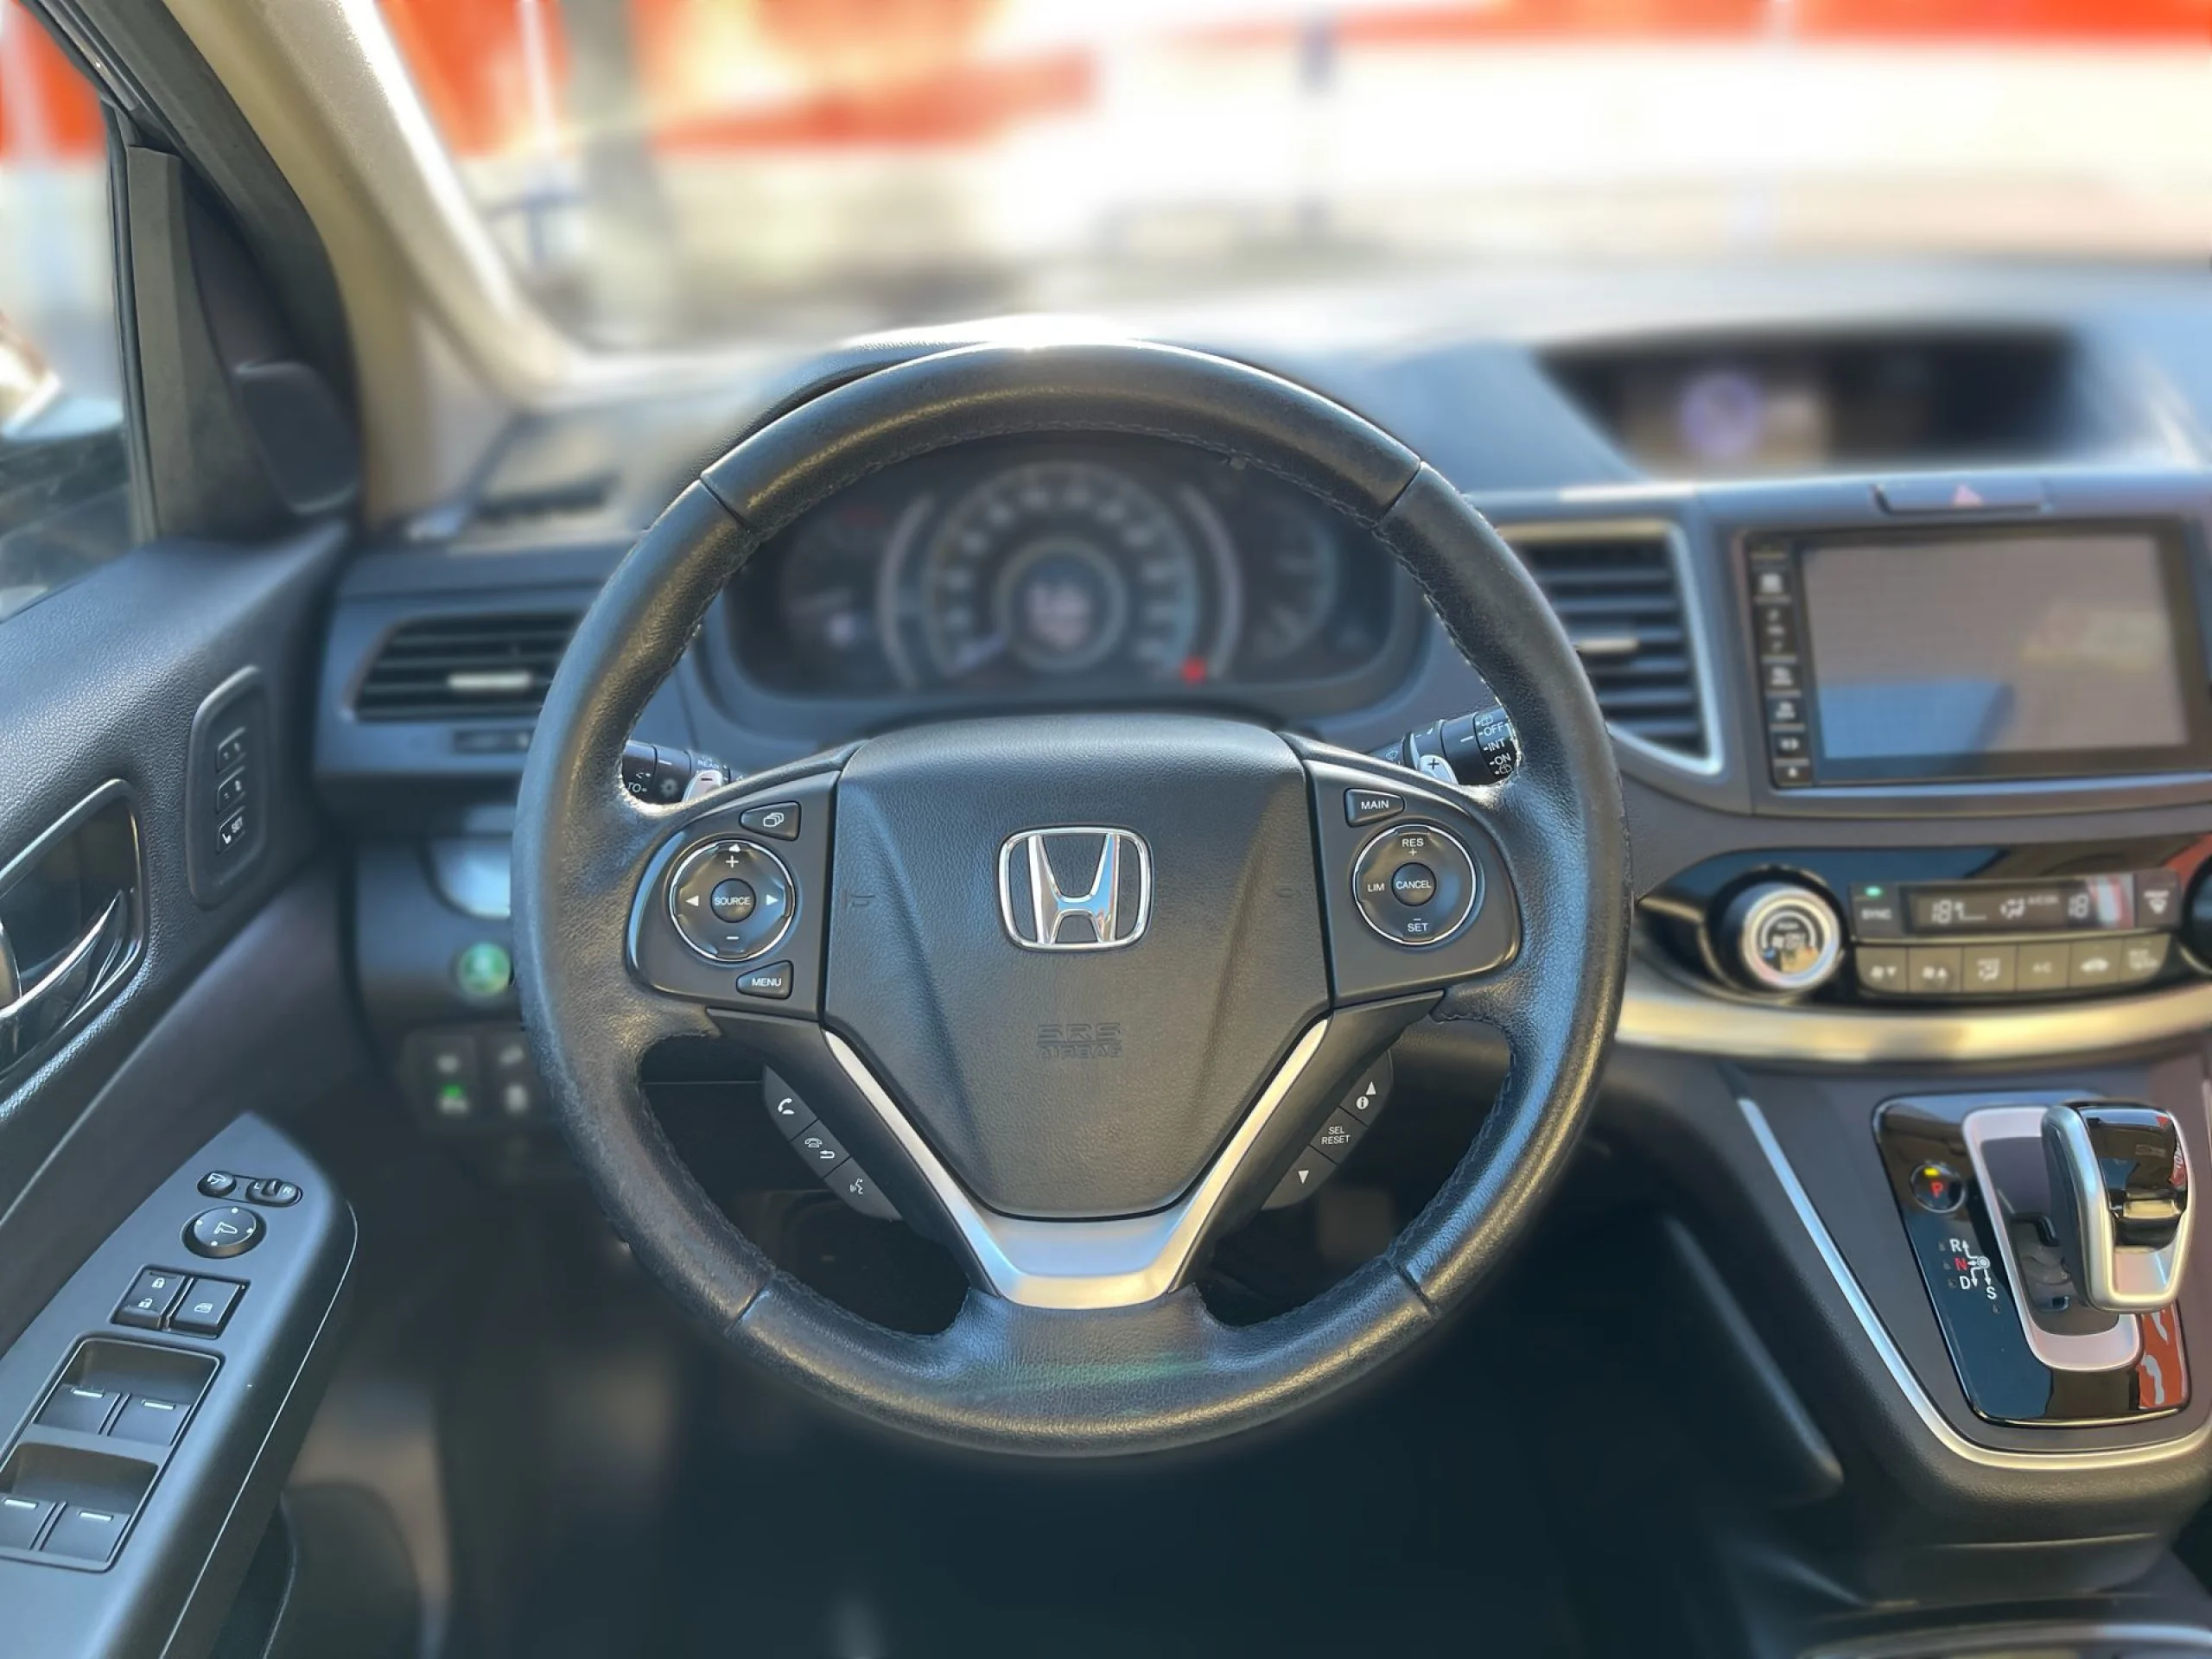 Honda CR-V 1.6 I-DTEC Executive Aut. 118 kW (160 CV) - Foto 11